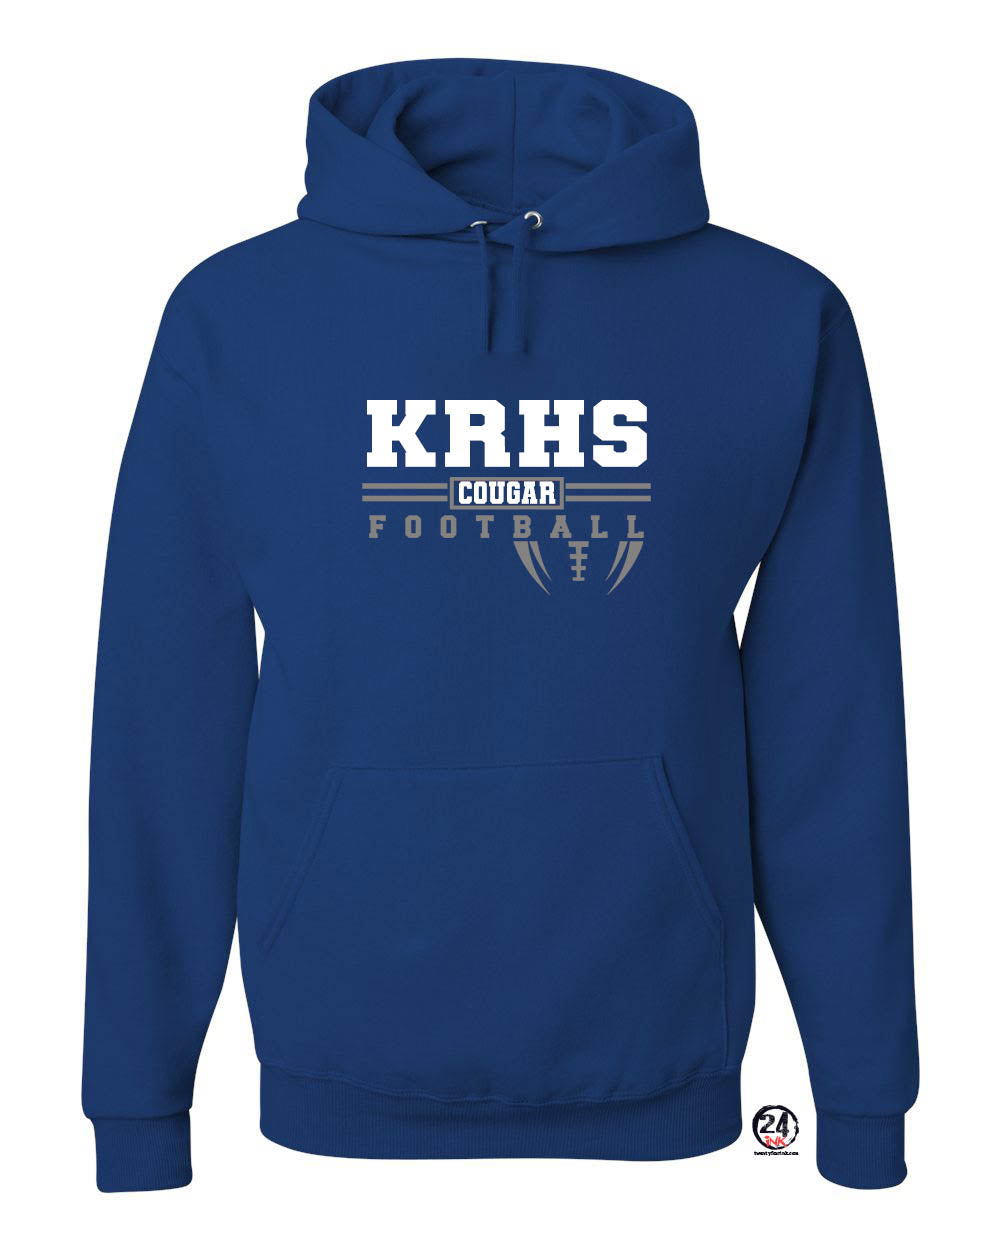 KRHS Cougar Football Hooded Sweatshirt